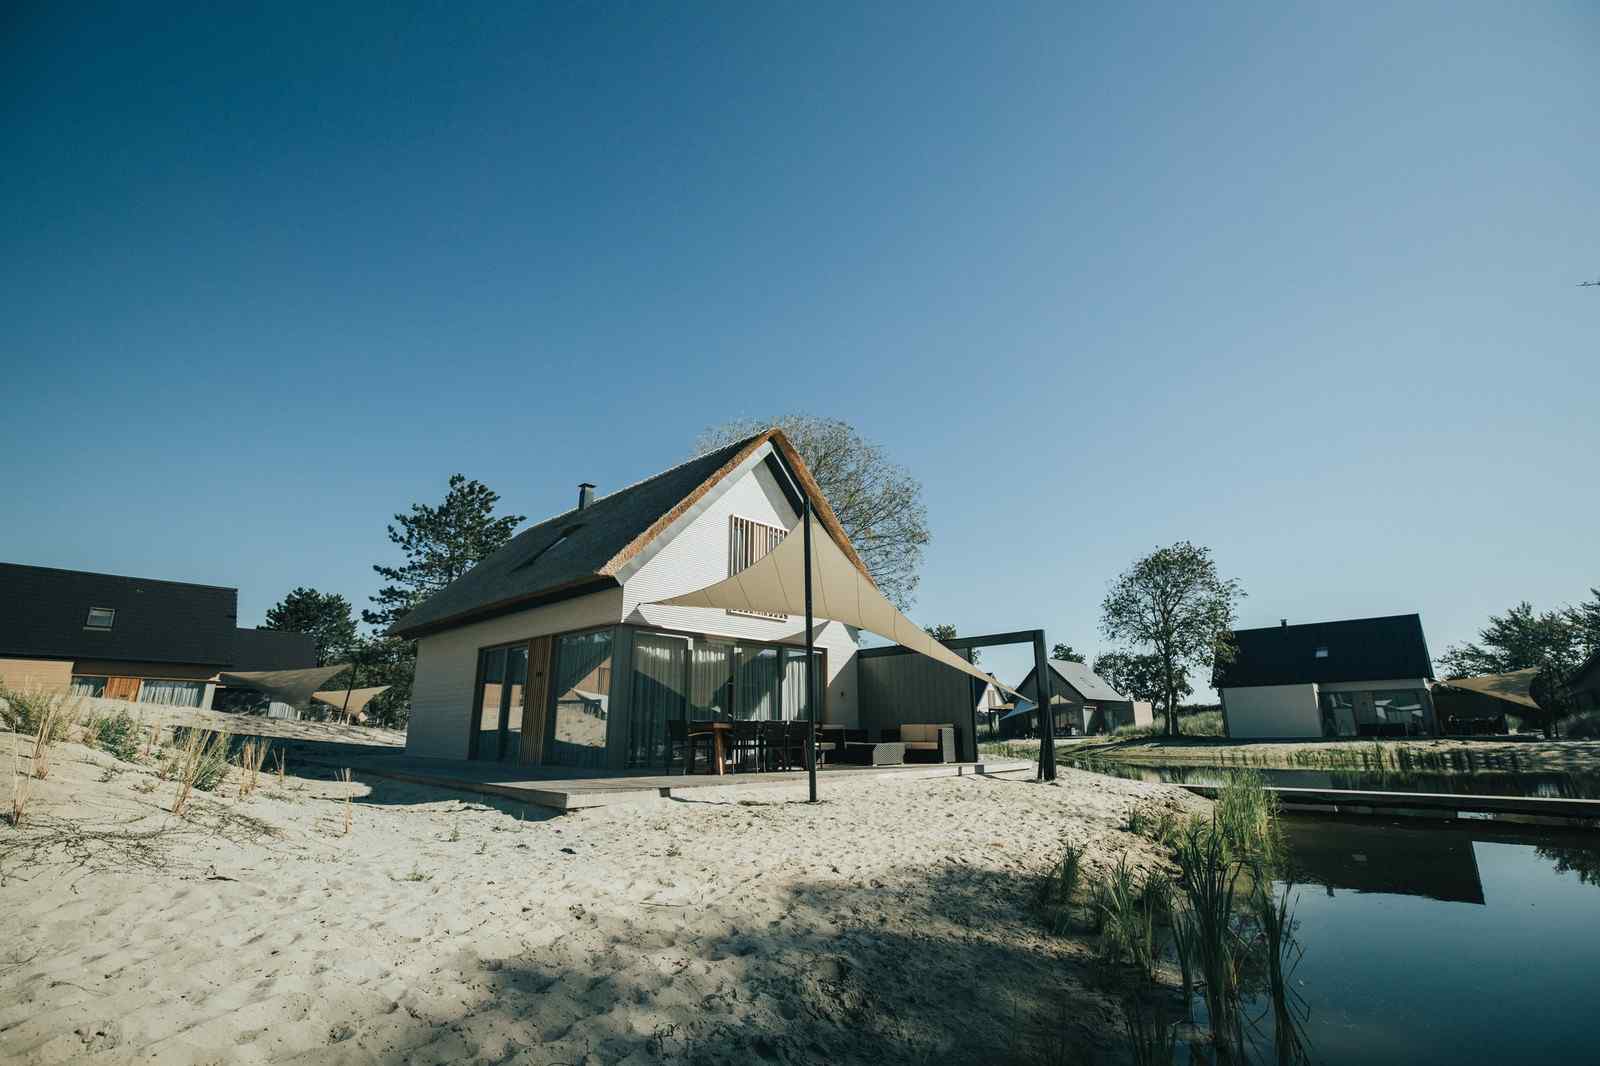 Luxe 6 persoons vakantiehuis in Ouddorp nabij het strand.